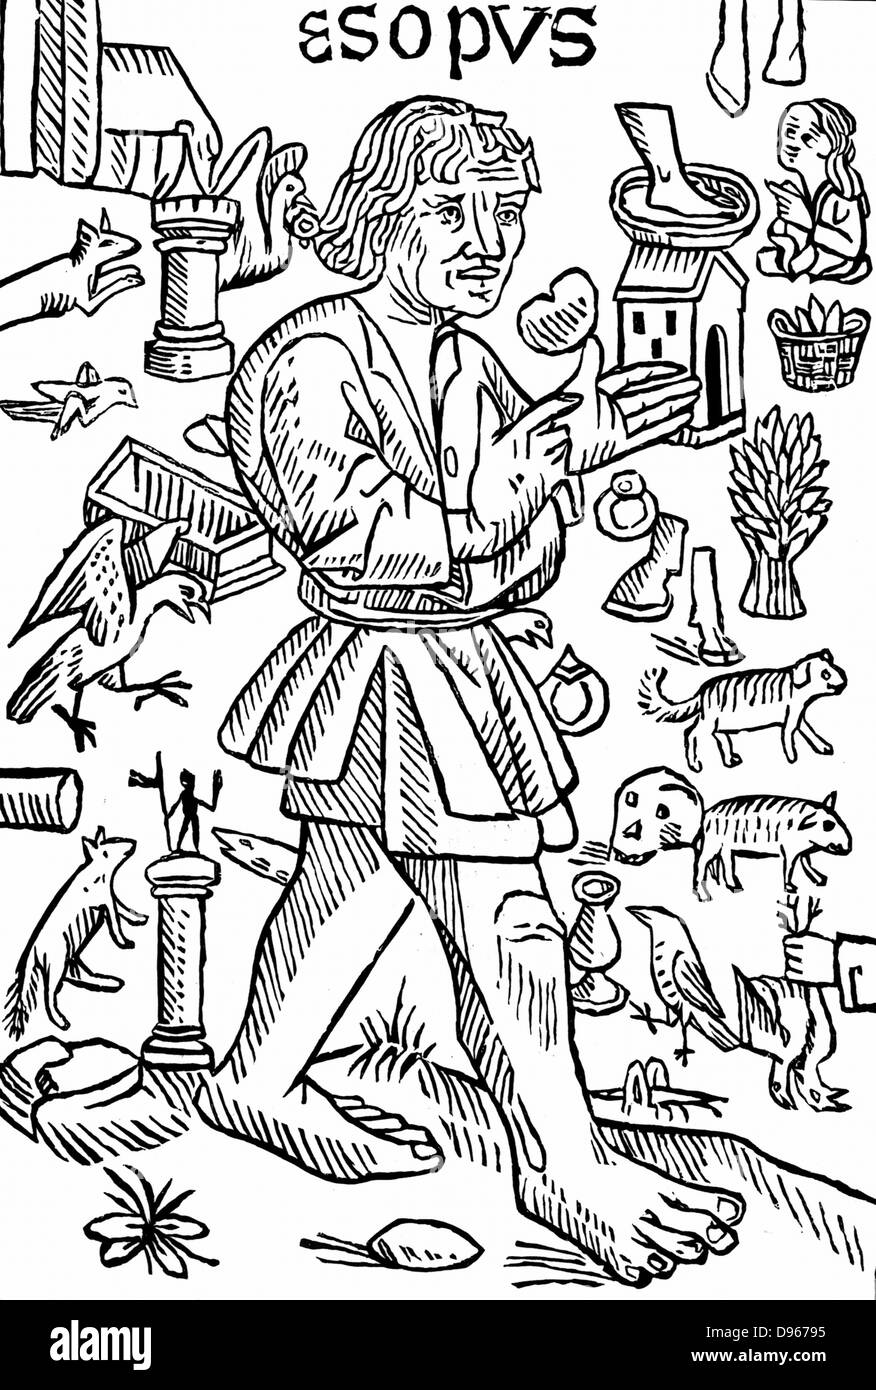 Aesop - vermutlich legendären griechischen fabulist. Herodot zufolge, er lebte im 6.Jahrhundert v. Chr.. Frontispiz von William Caxton' Fabeln von Aesop', London c 1480. Holzschnitt. Stockfoto